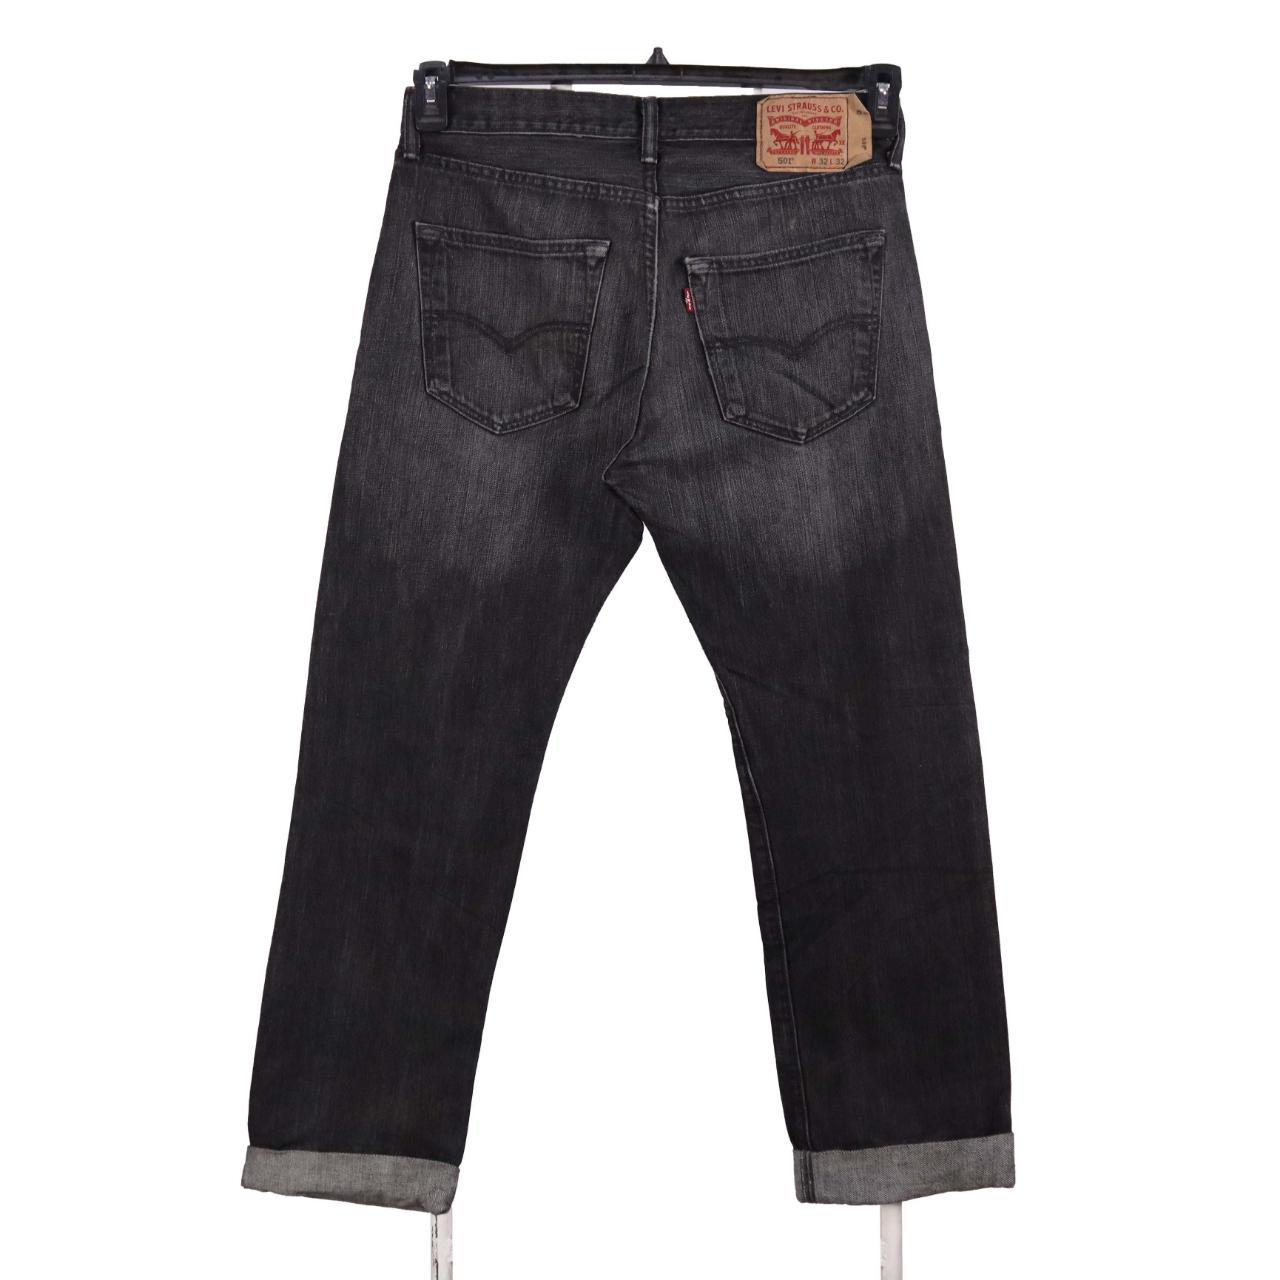 Vintage Levi's Jeans / Pants Levi's 90's Jeans /... - Depop